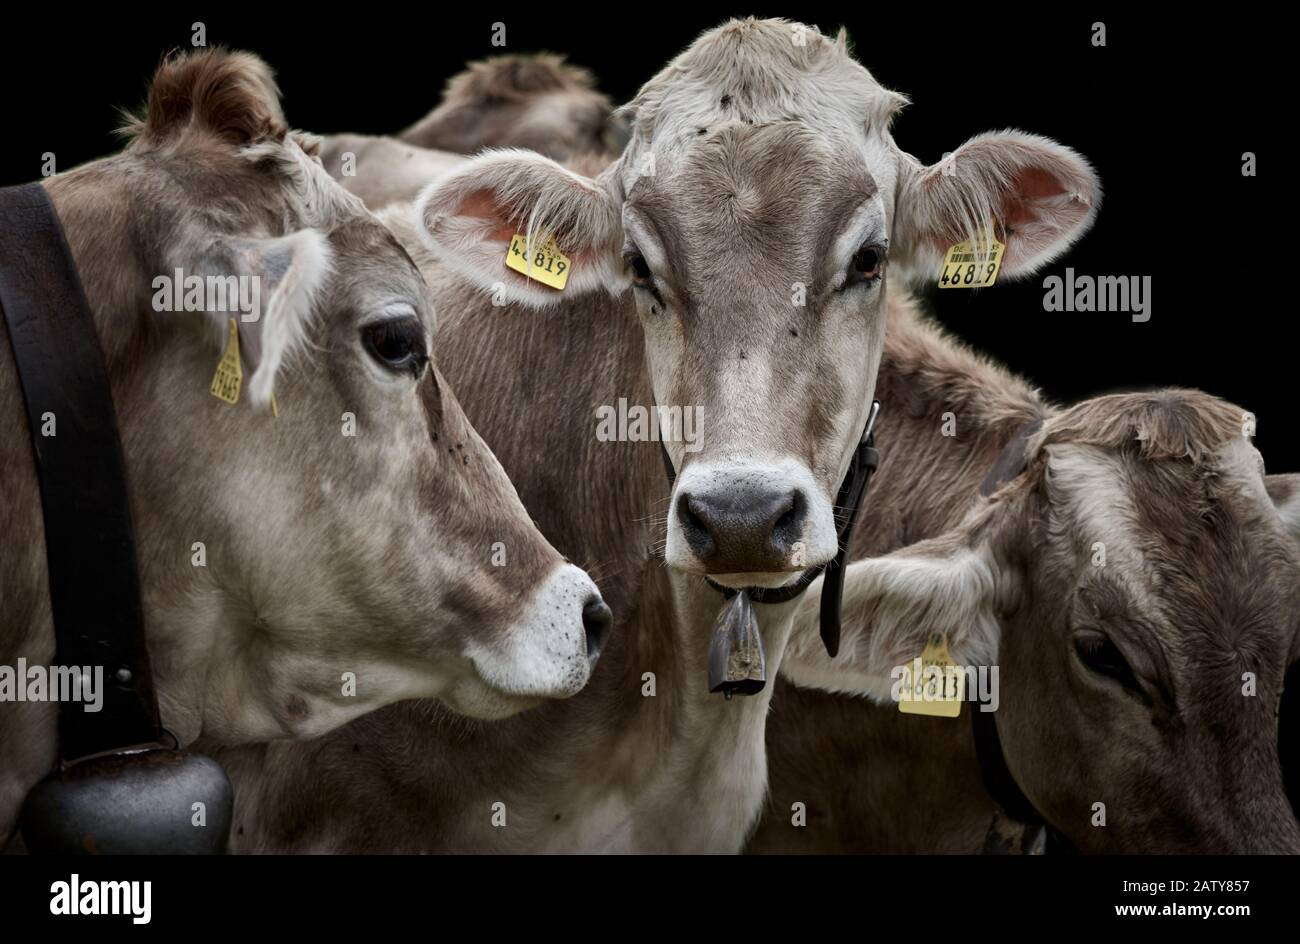 Trois vaches à lait brun avec cloches de vache et étiquettes jaunes, gros plan et isolées sur fond noir Banque D'Images